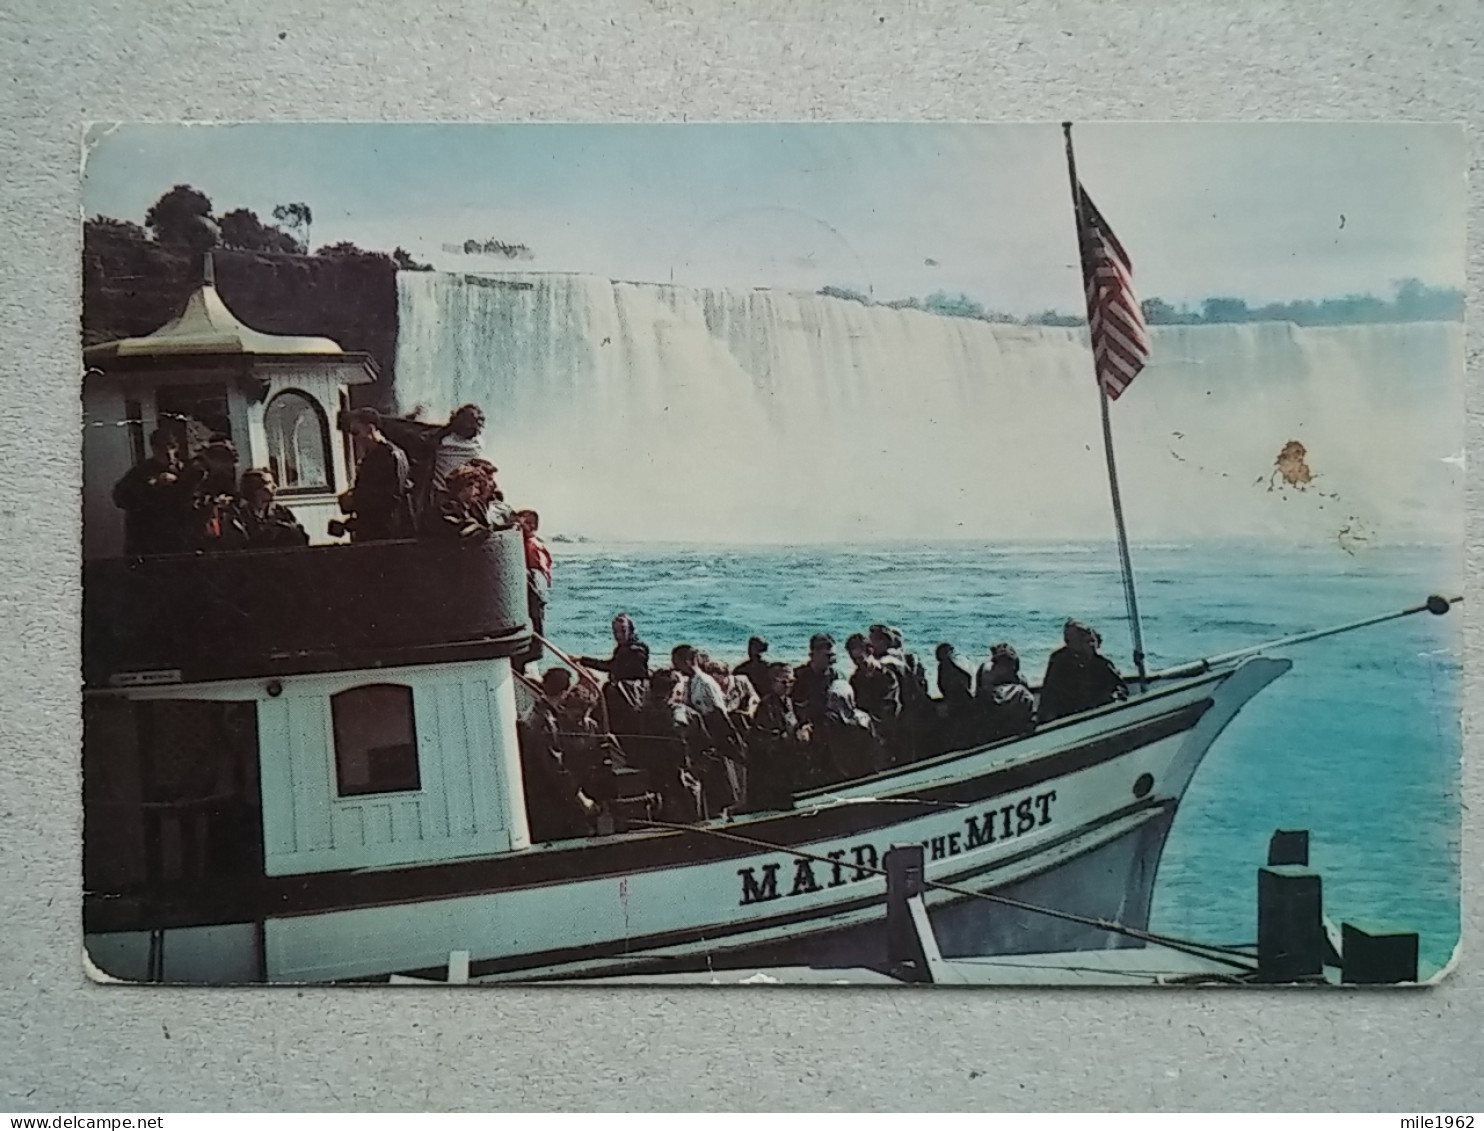 Kov 574-8  - NIAGARA FALLS, CANADA,  - Niagarafälle